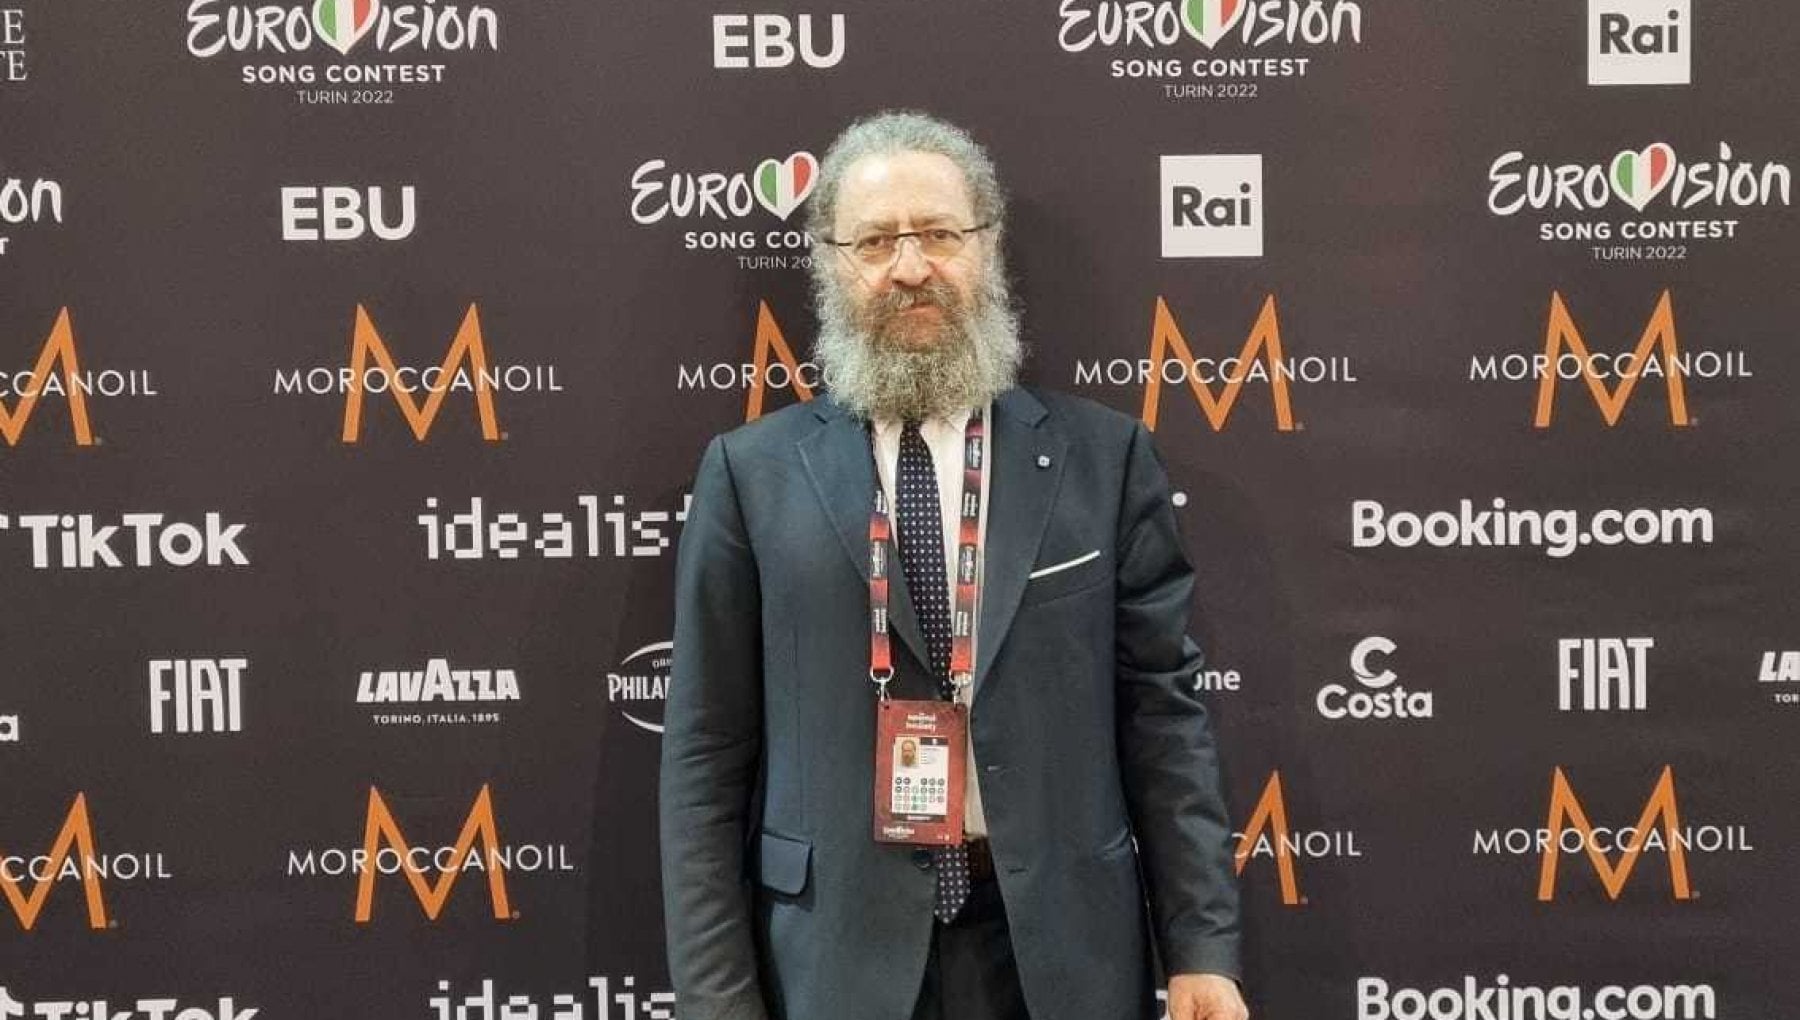 Il pioniere della cybersecurity scelto dalla Rai per proteggere l’Eurovision: “Attacchi russi? Nulla di che”